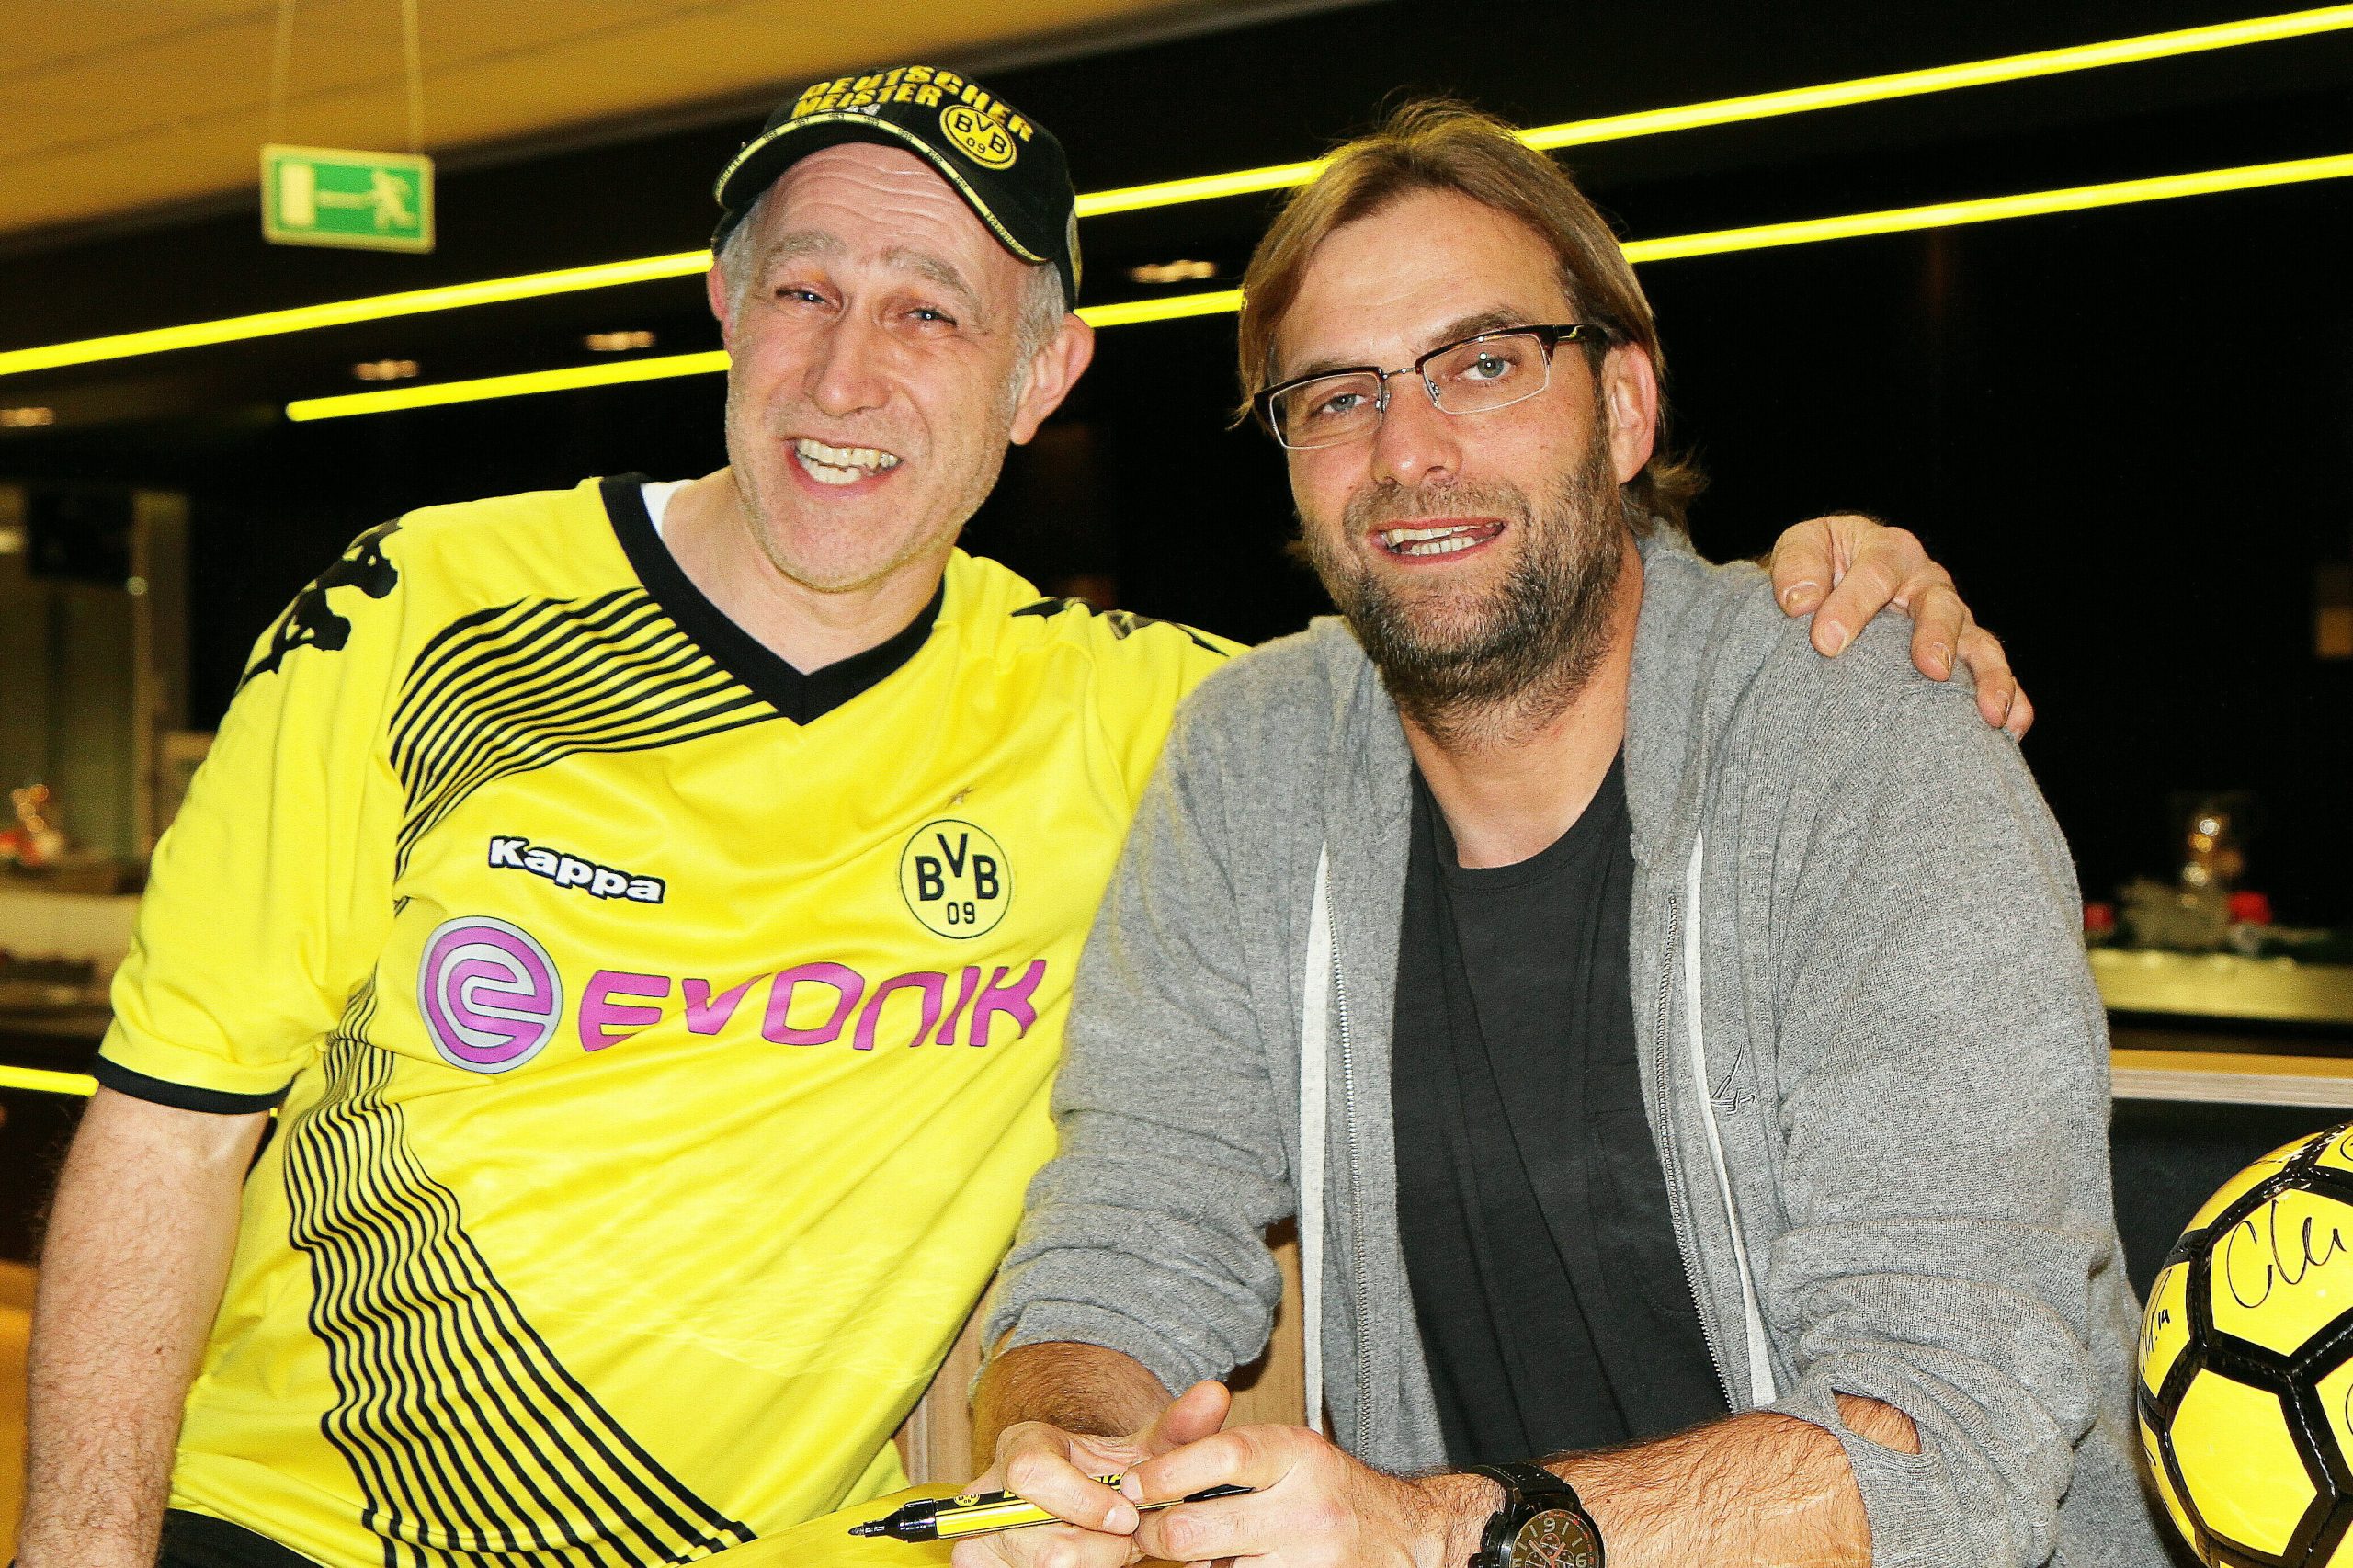 BBAG Mitglied Jürgen Schmidt und der ehemalige BVB Trainer Jürgen Klopp auf der BVB Fanclub Weihnachtsfeier.